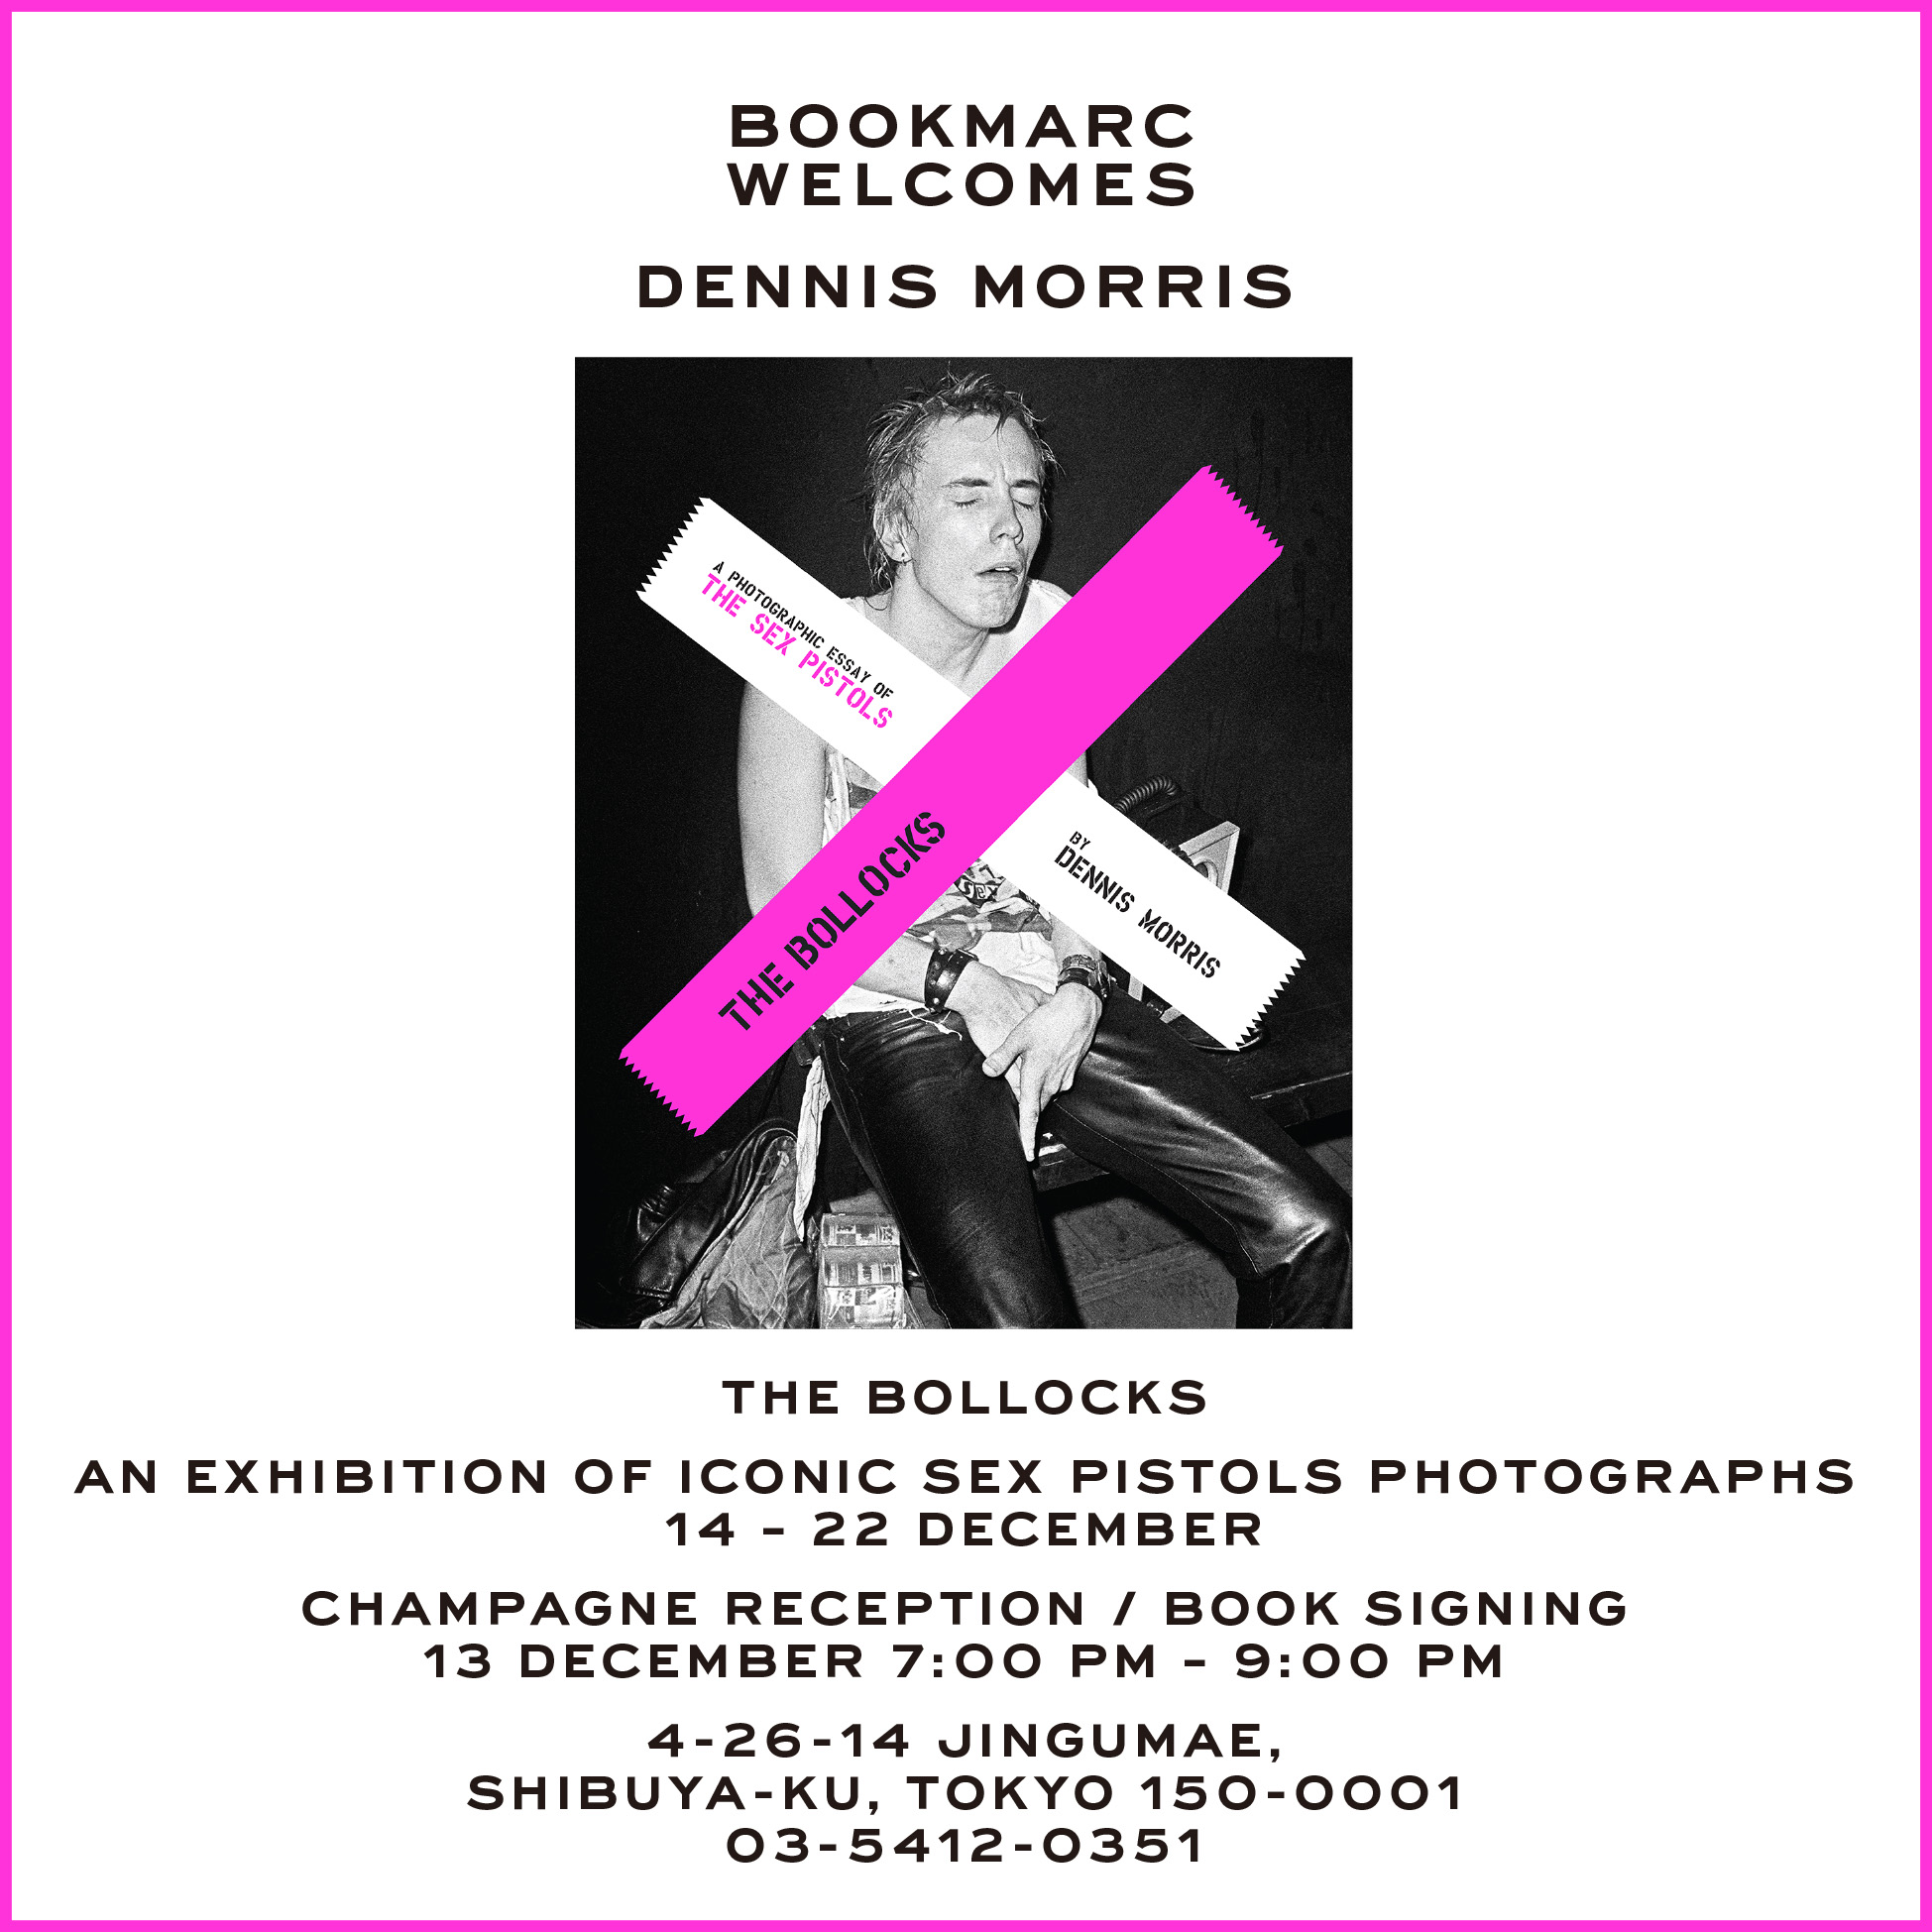 写真家デニス モリスによるセックス ピストルズの写真シリーズを Bookmarc で一挙公開 写真展に合わせて限定スペシャルボックスとkidillの限定tシャツを販売 マーク ジェイコブス ジャパン株式会社のプレスリリース